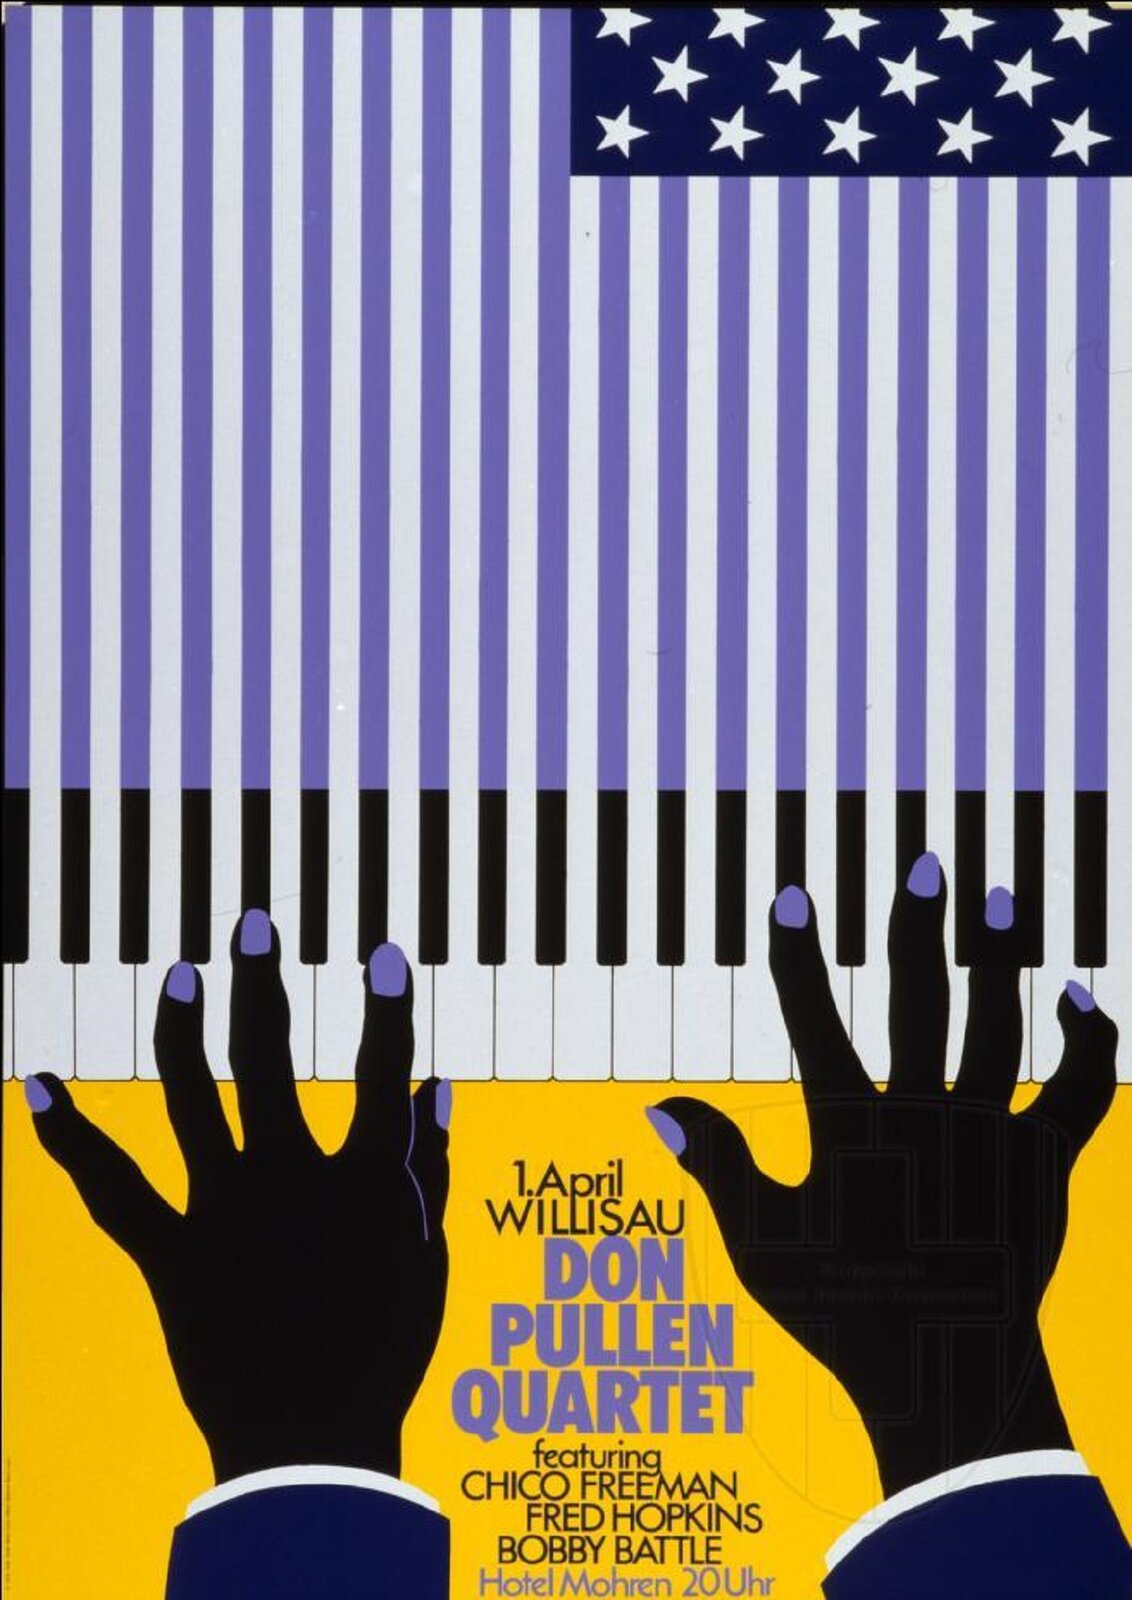 Ilustracja przedstawia plakat promujący koncert jazzowy kwartetu „Don Pullen”, autorstwa Niklausa Troxlera. Górna część grafiki została do połowy pokryta fioletowymi, pionowymi pasami na białym tle, które u dołu, w połowie kompozycji, kończą się czarnymi klawiszami umieszczonymi na białej klawiaturze. U góry w prawym rogu mieści się niebieski prostokąt z białymi gwiazdkami. Fioletowe pasy oraz granatowy prostokąt tworzą motyw amerykańskiej flagi. Na dole kadru, na żółtym tle umieszczone zostały dwie czarne dłonie o fioletowych paznokciach. Ich palce dotykają płaszczyzny klawiatury. Pomiędzy rękoma znajdują się czarne napisy informacyjne z pogrubionym, fioletowym tekstem „DON PULLEN QUARTET”.